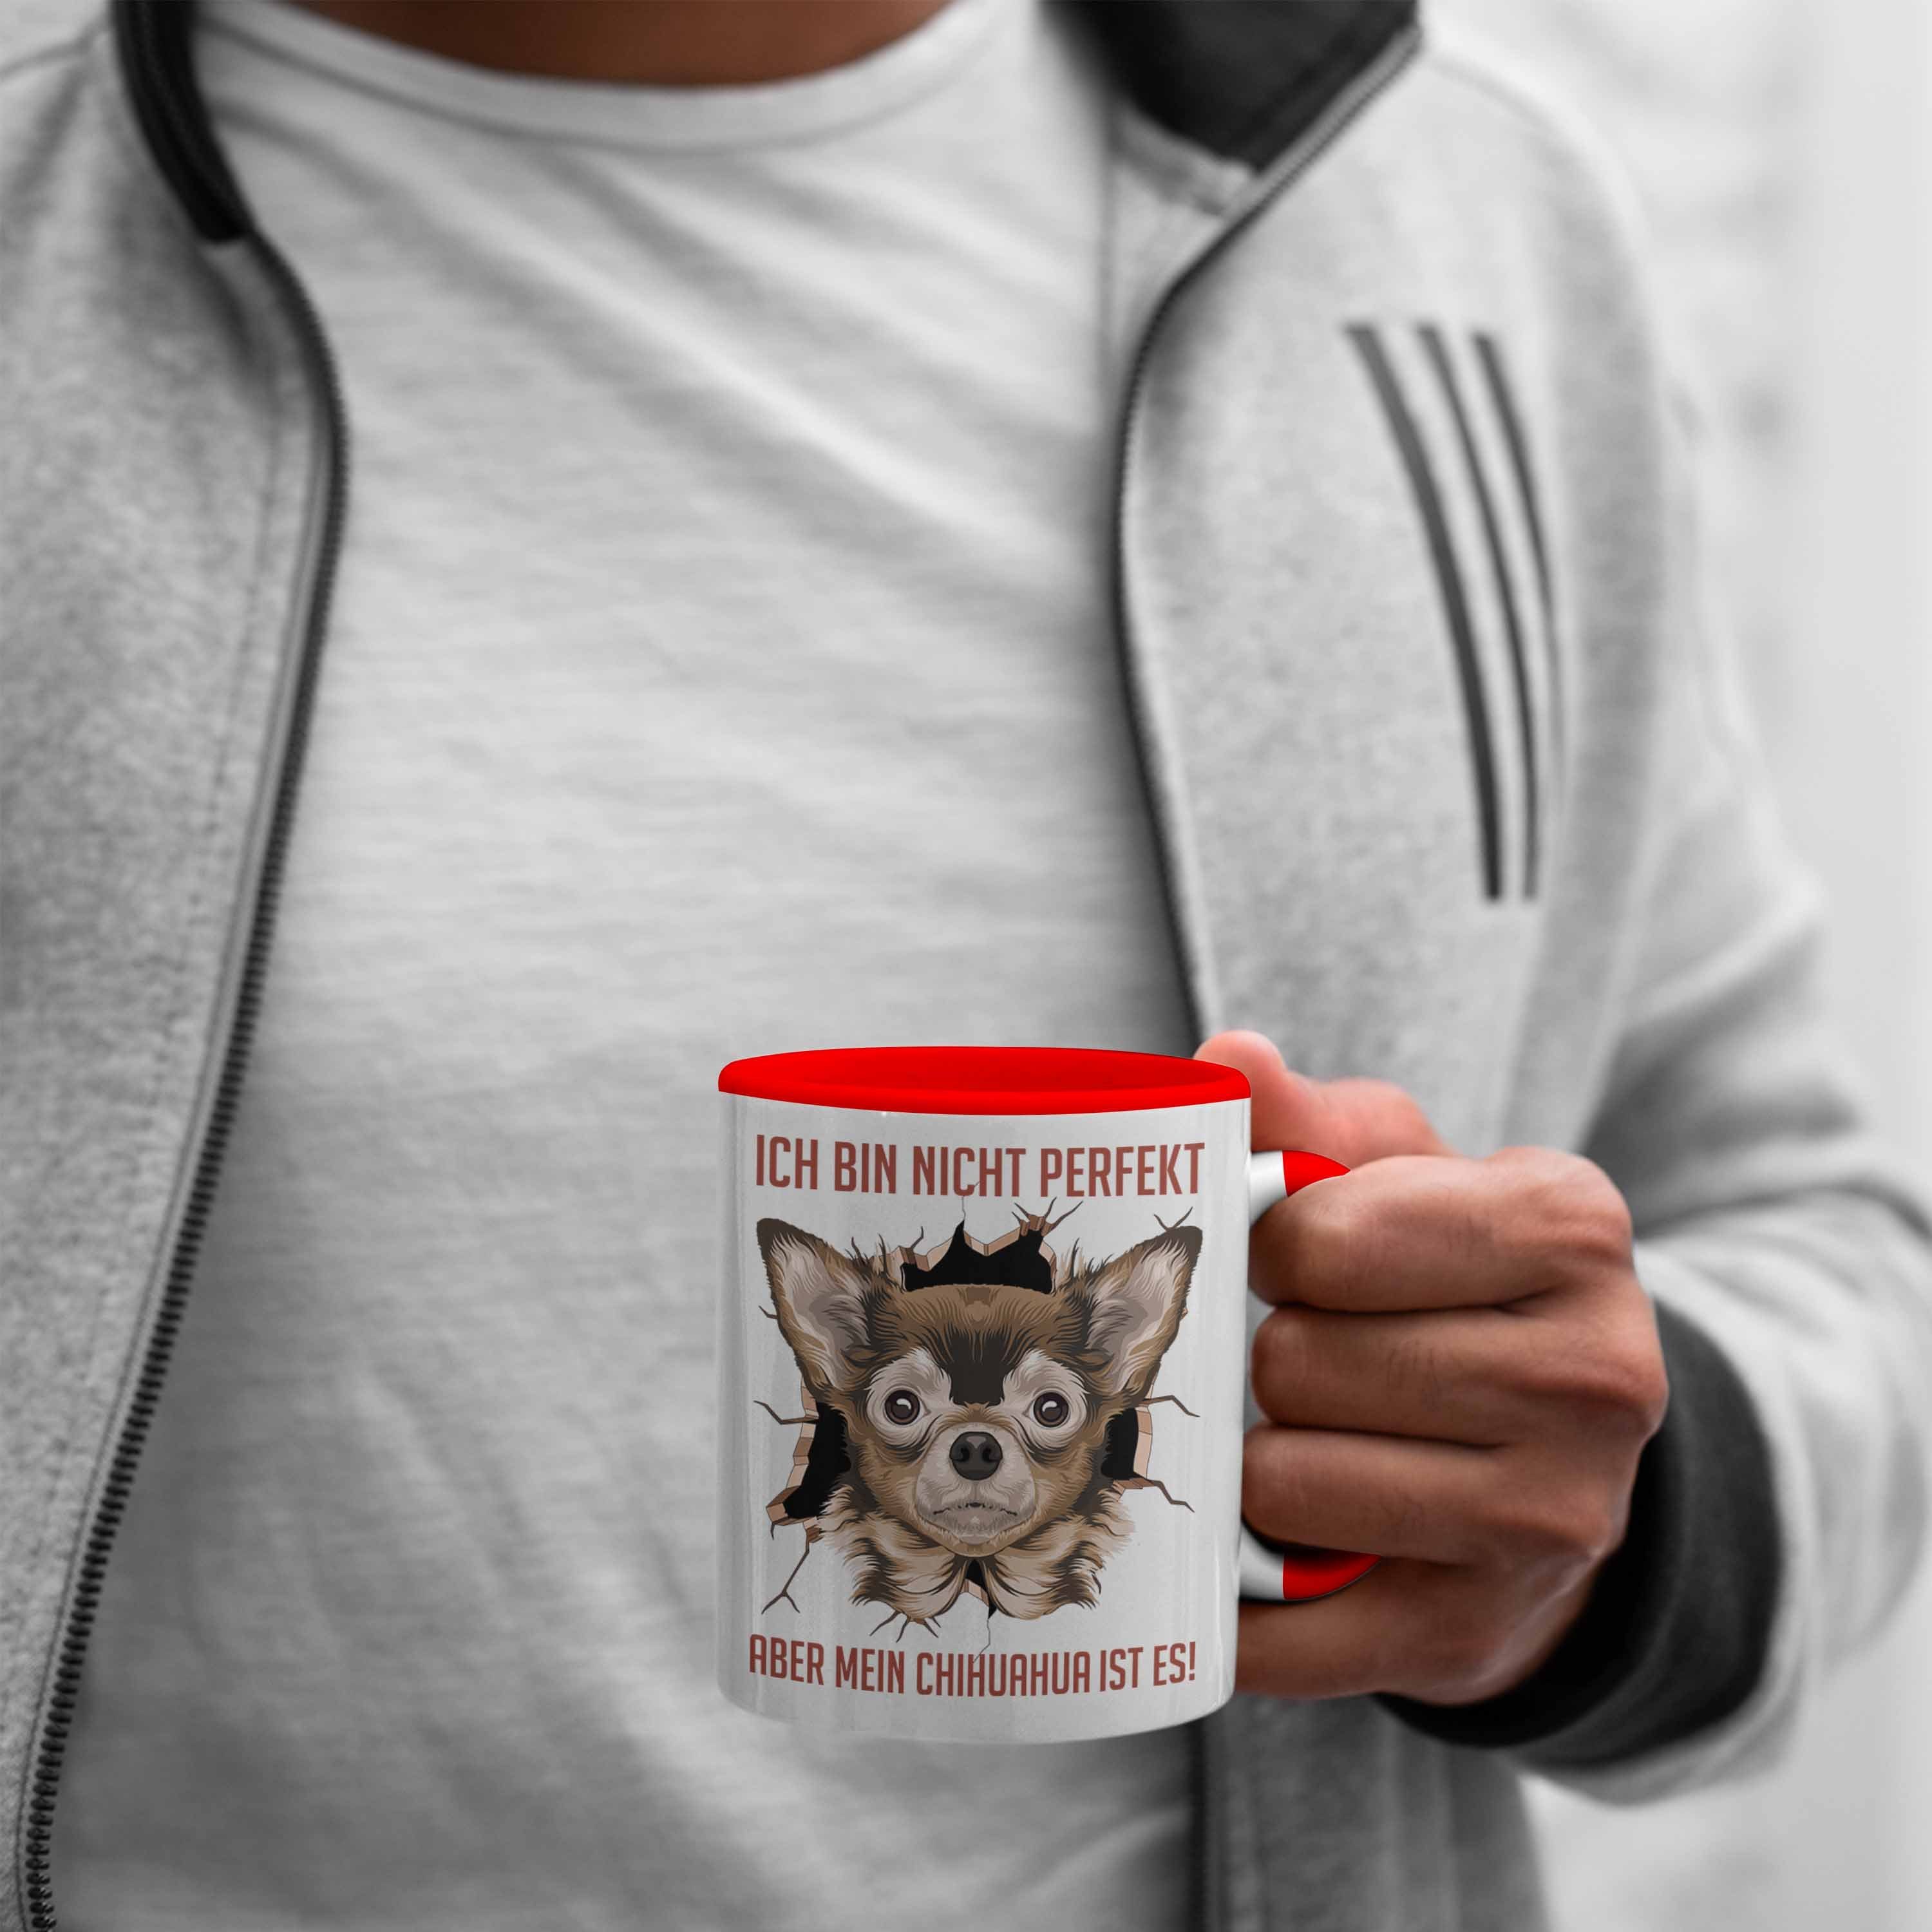 Frauchen Besitzer Trendation Kaffee-Becher Geschenk Tasse Chihuhahua Geschenkidee Tasse Rot